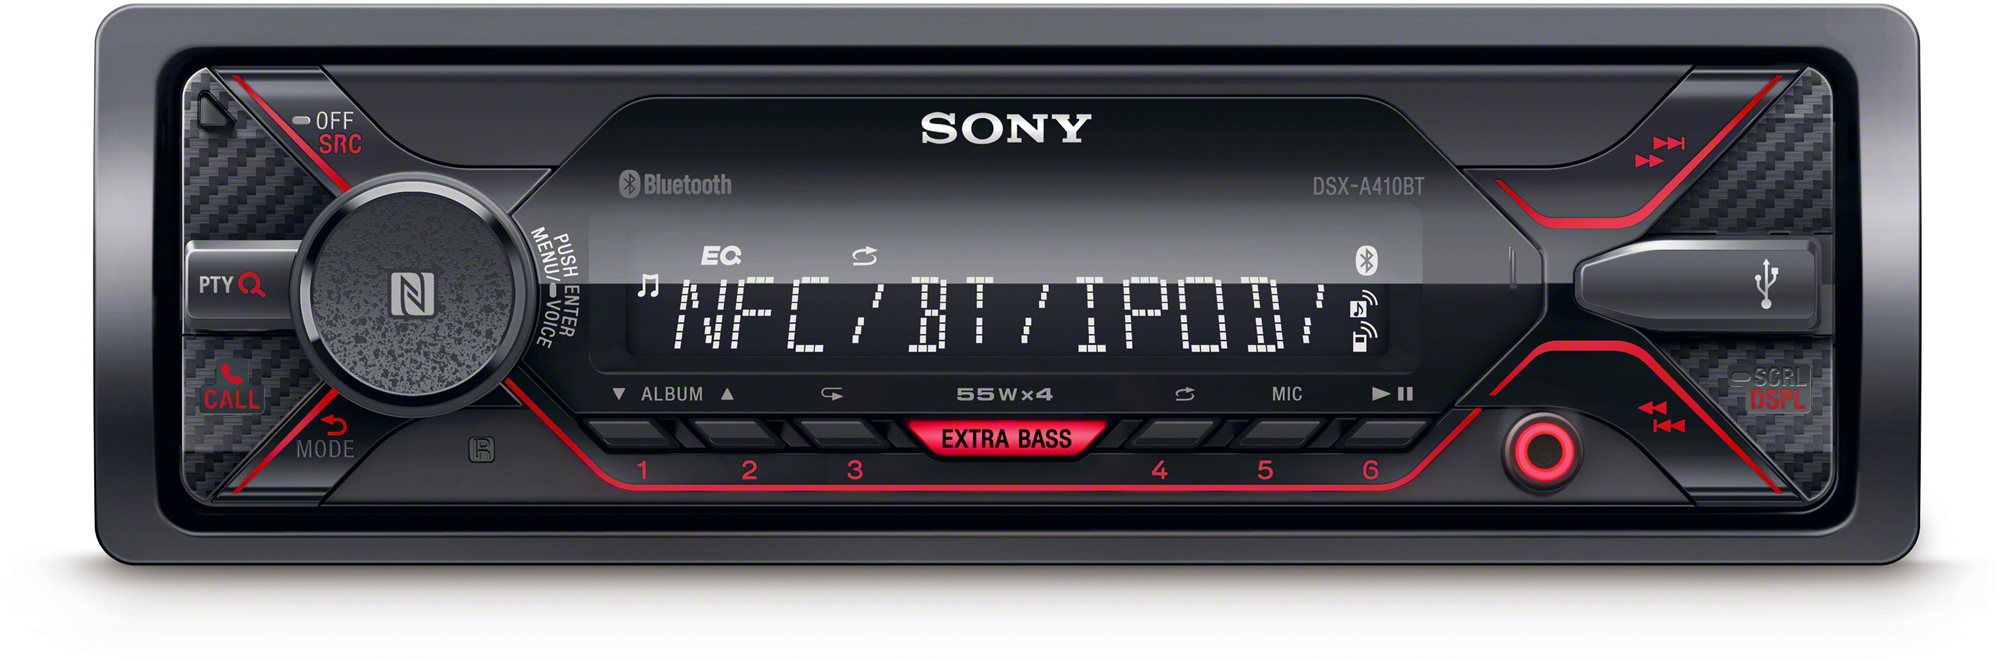 Sony autórádió DSX-A410BT meghajtó nélkül,USB,